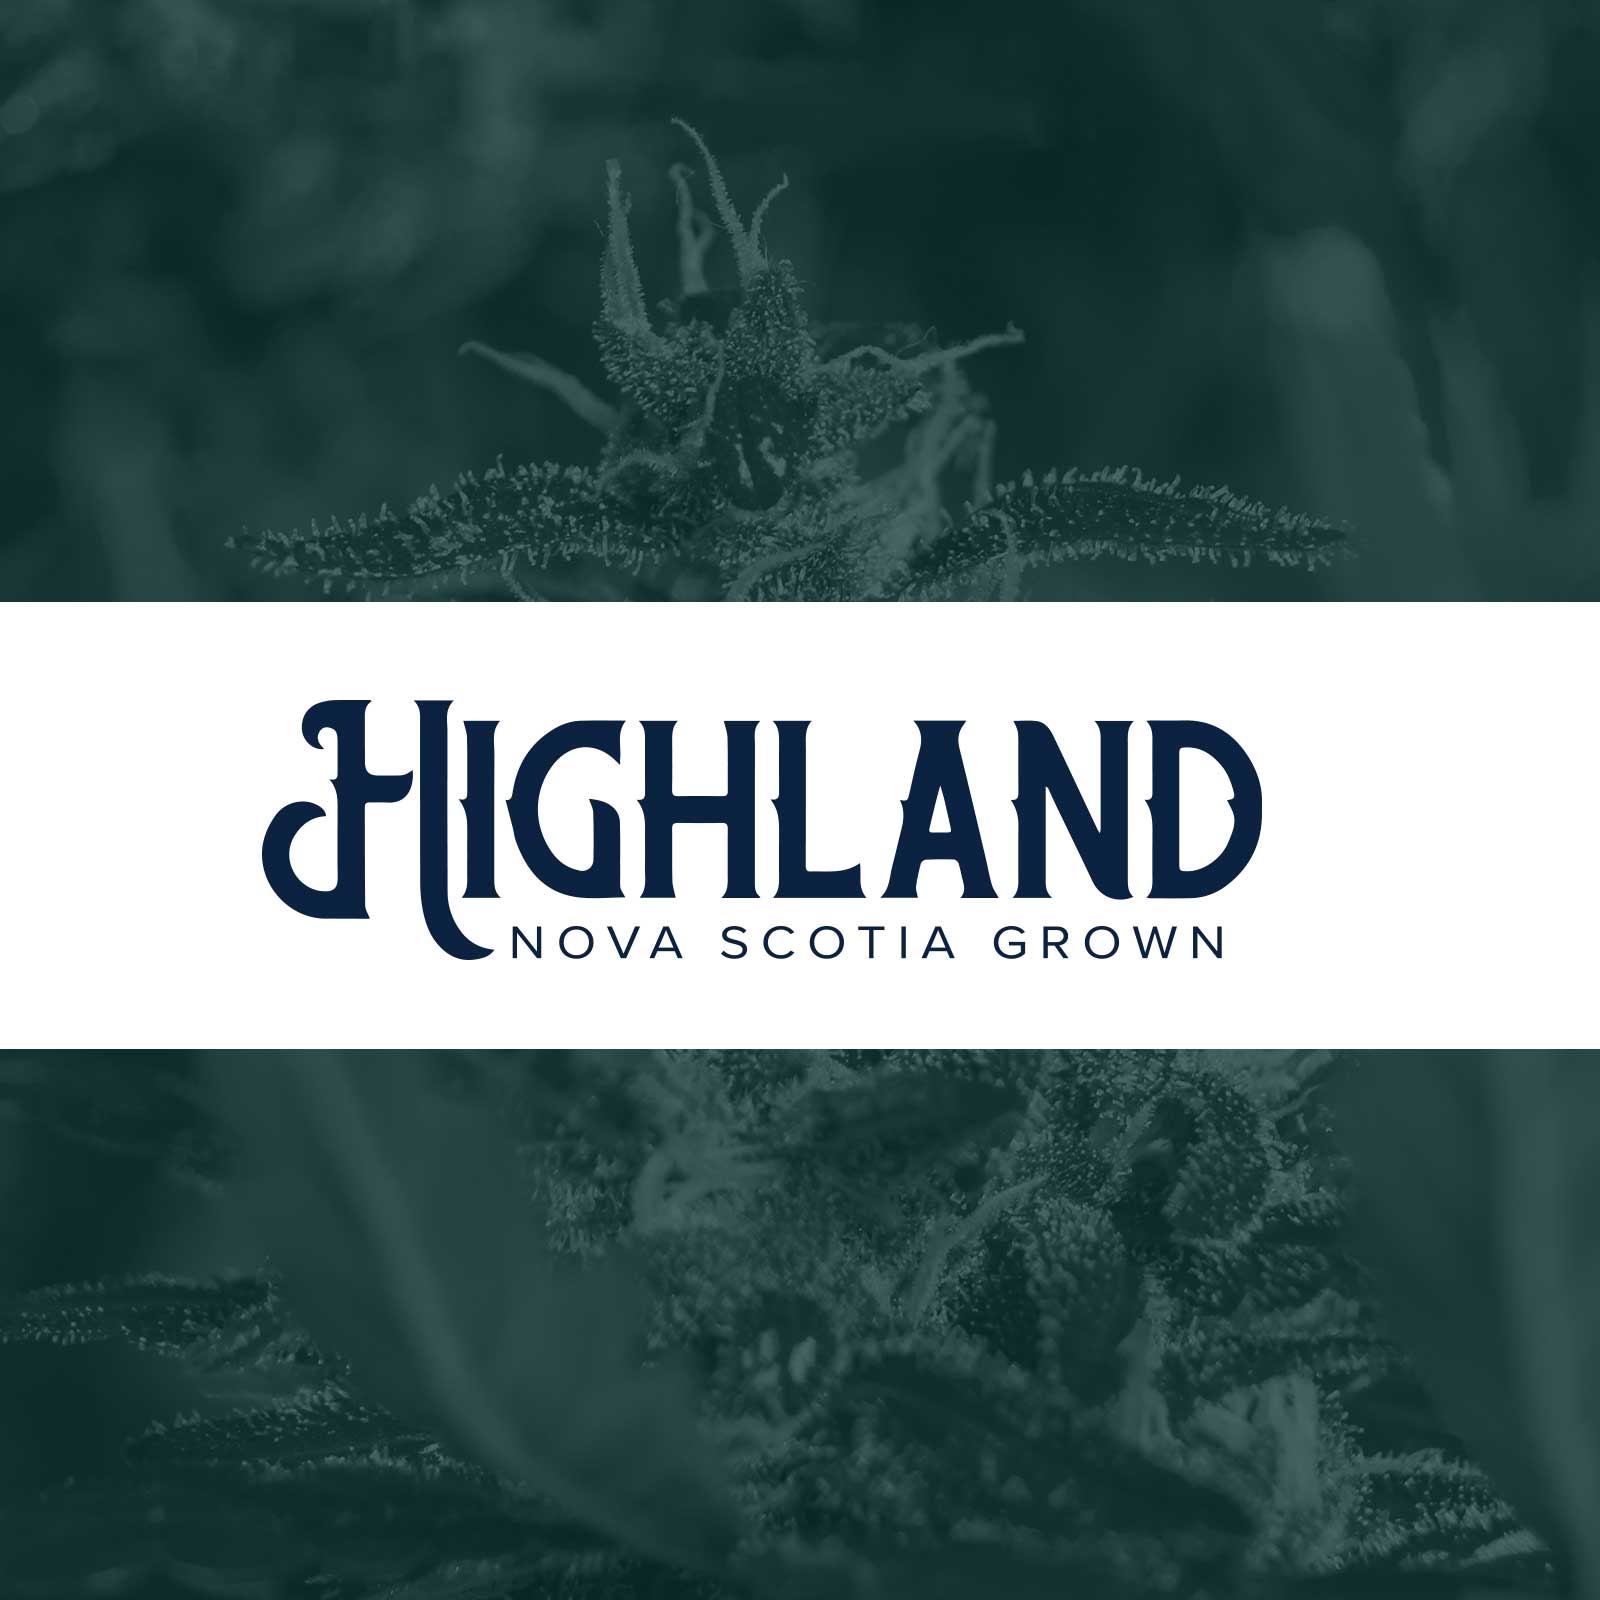 Highland Grow